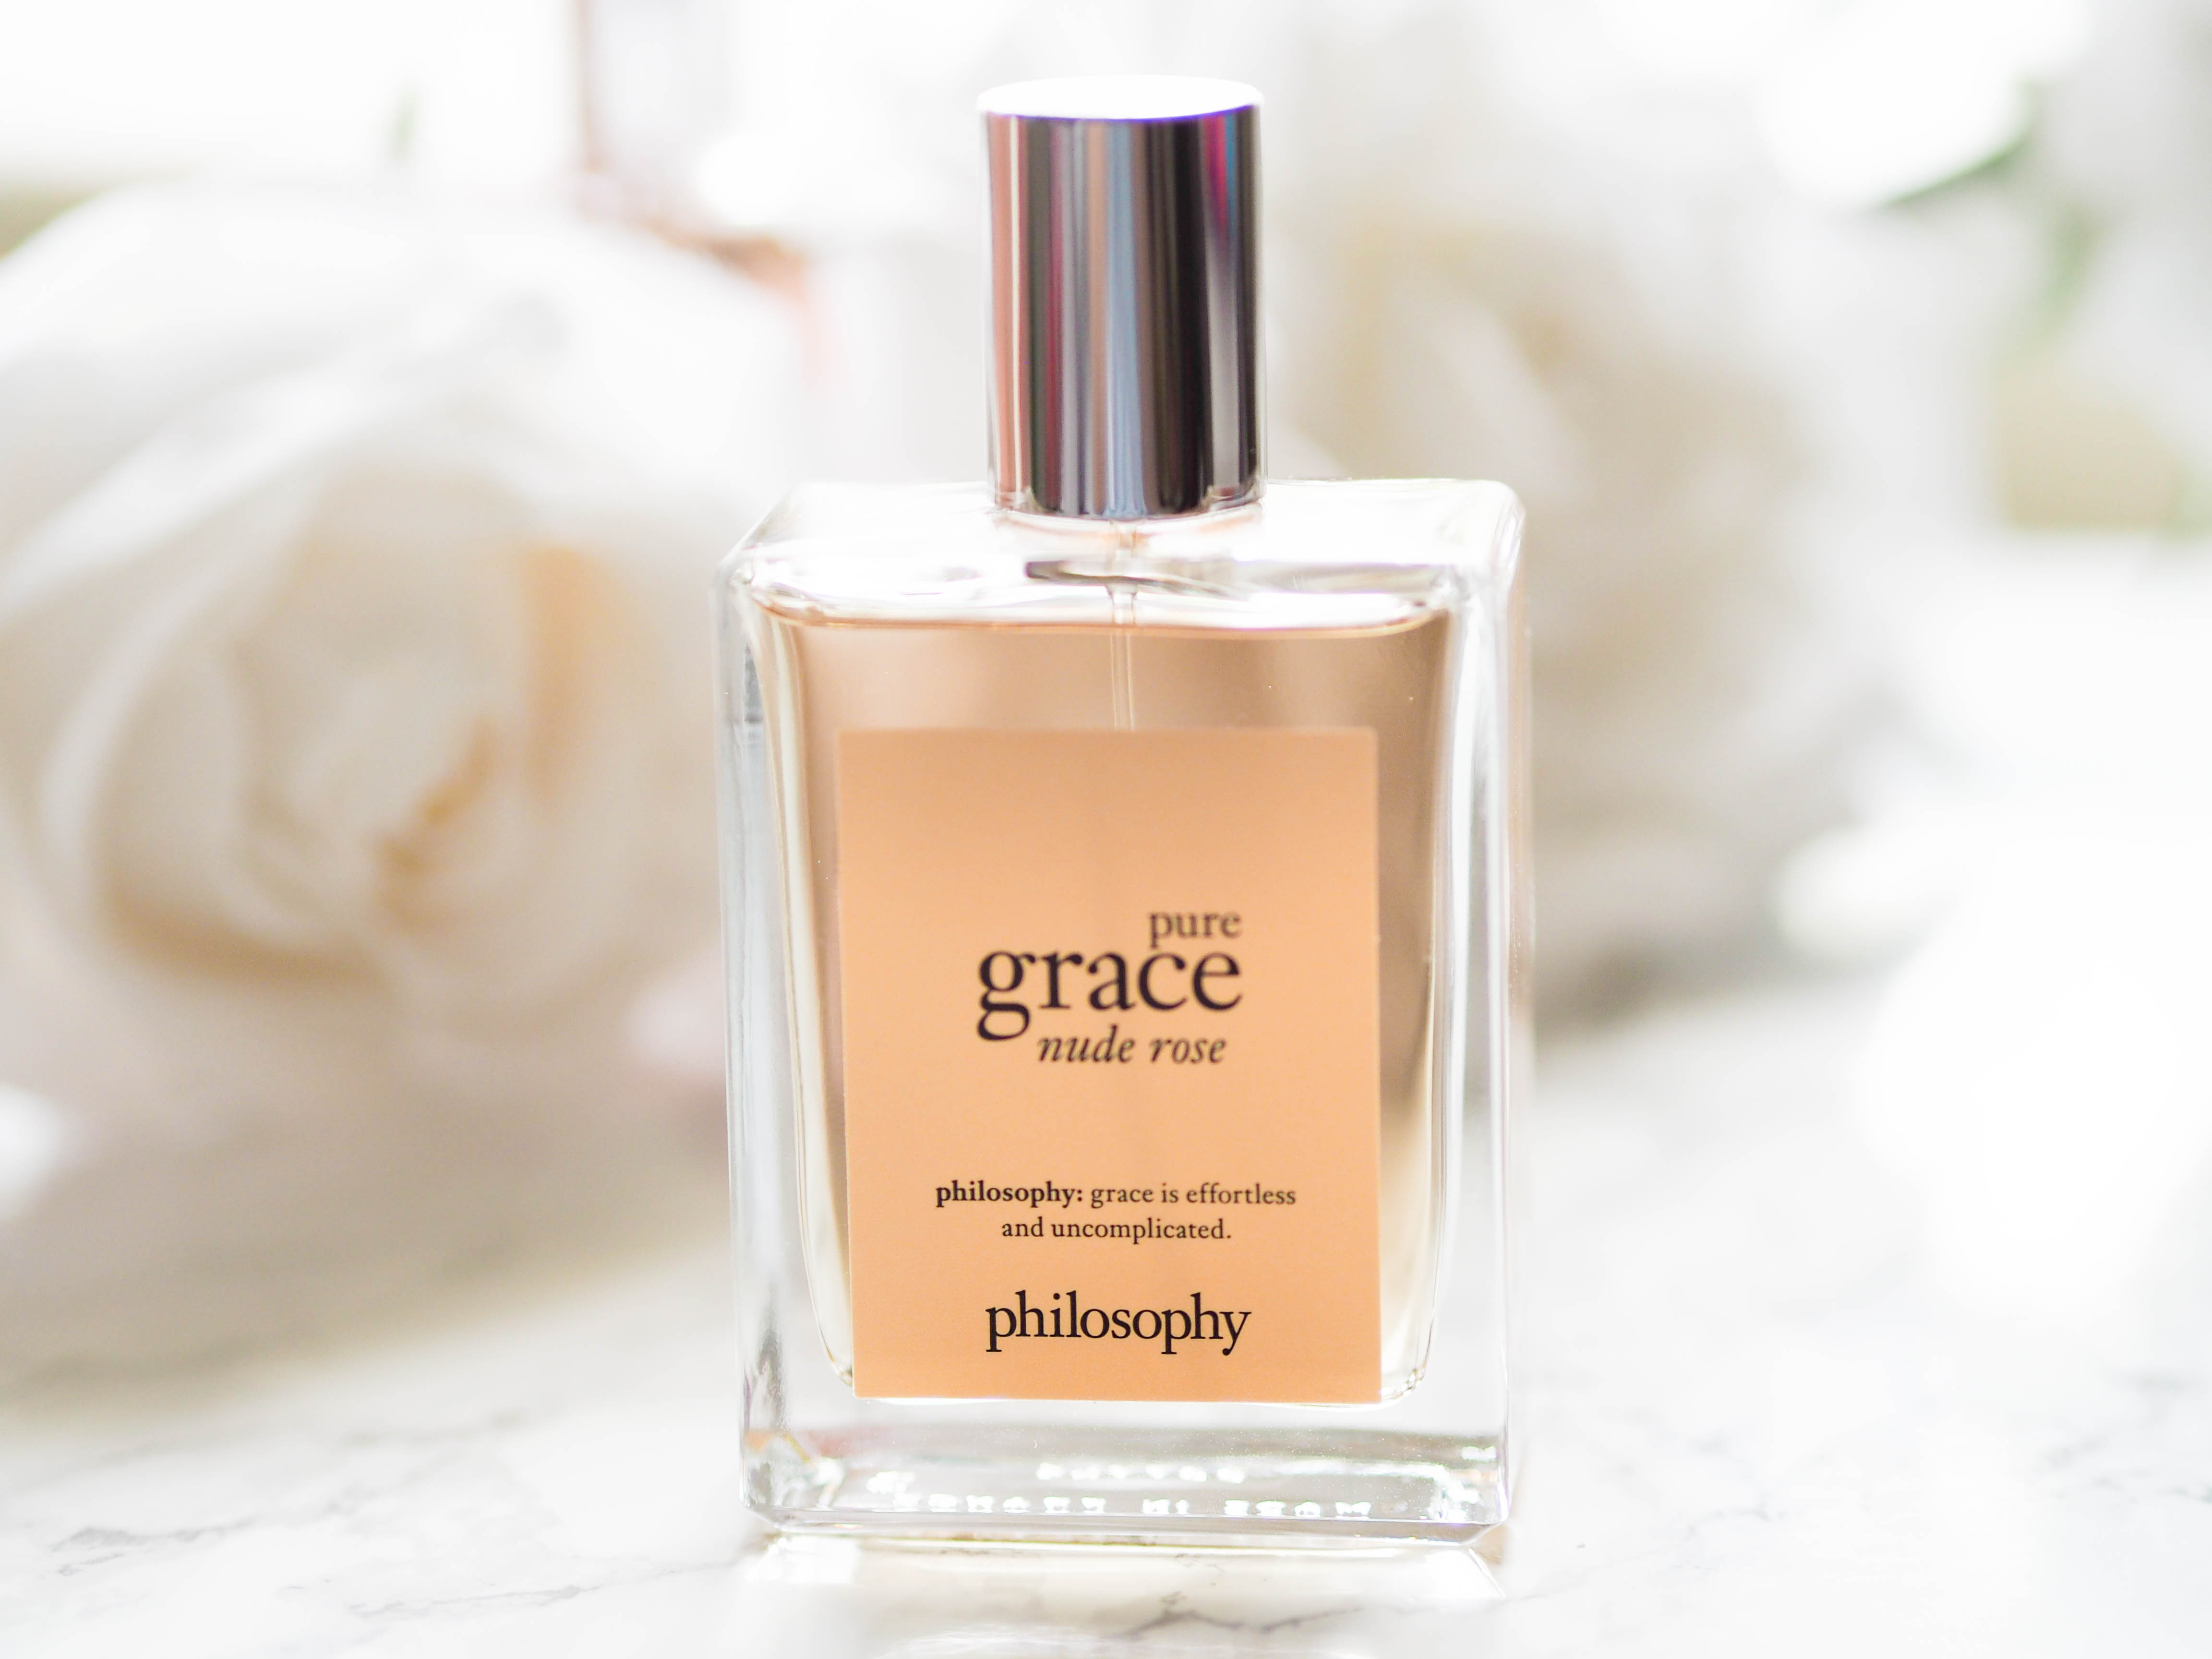 Philosophy Pure Grace NUDE ROSE Eau de Parfum Perfume 